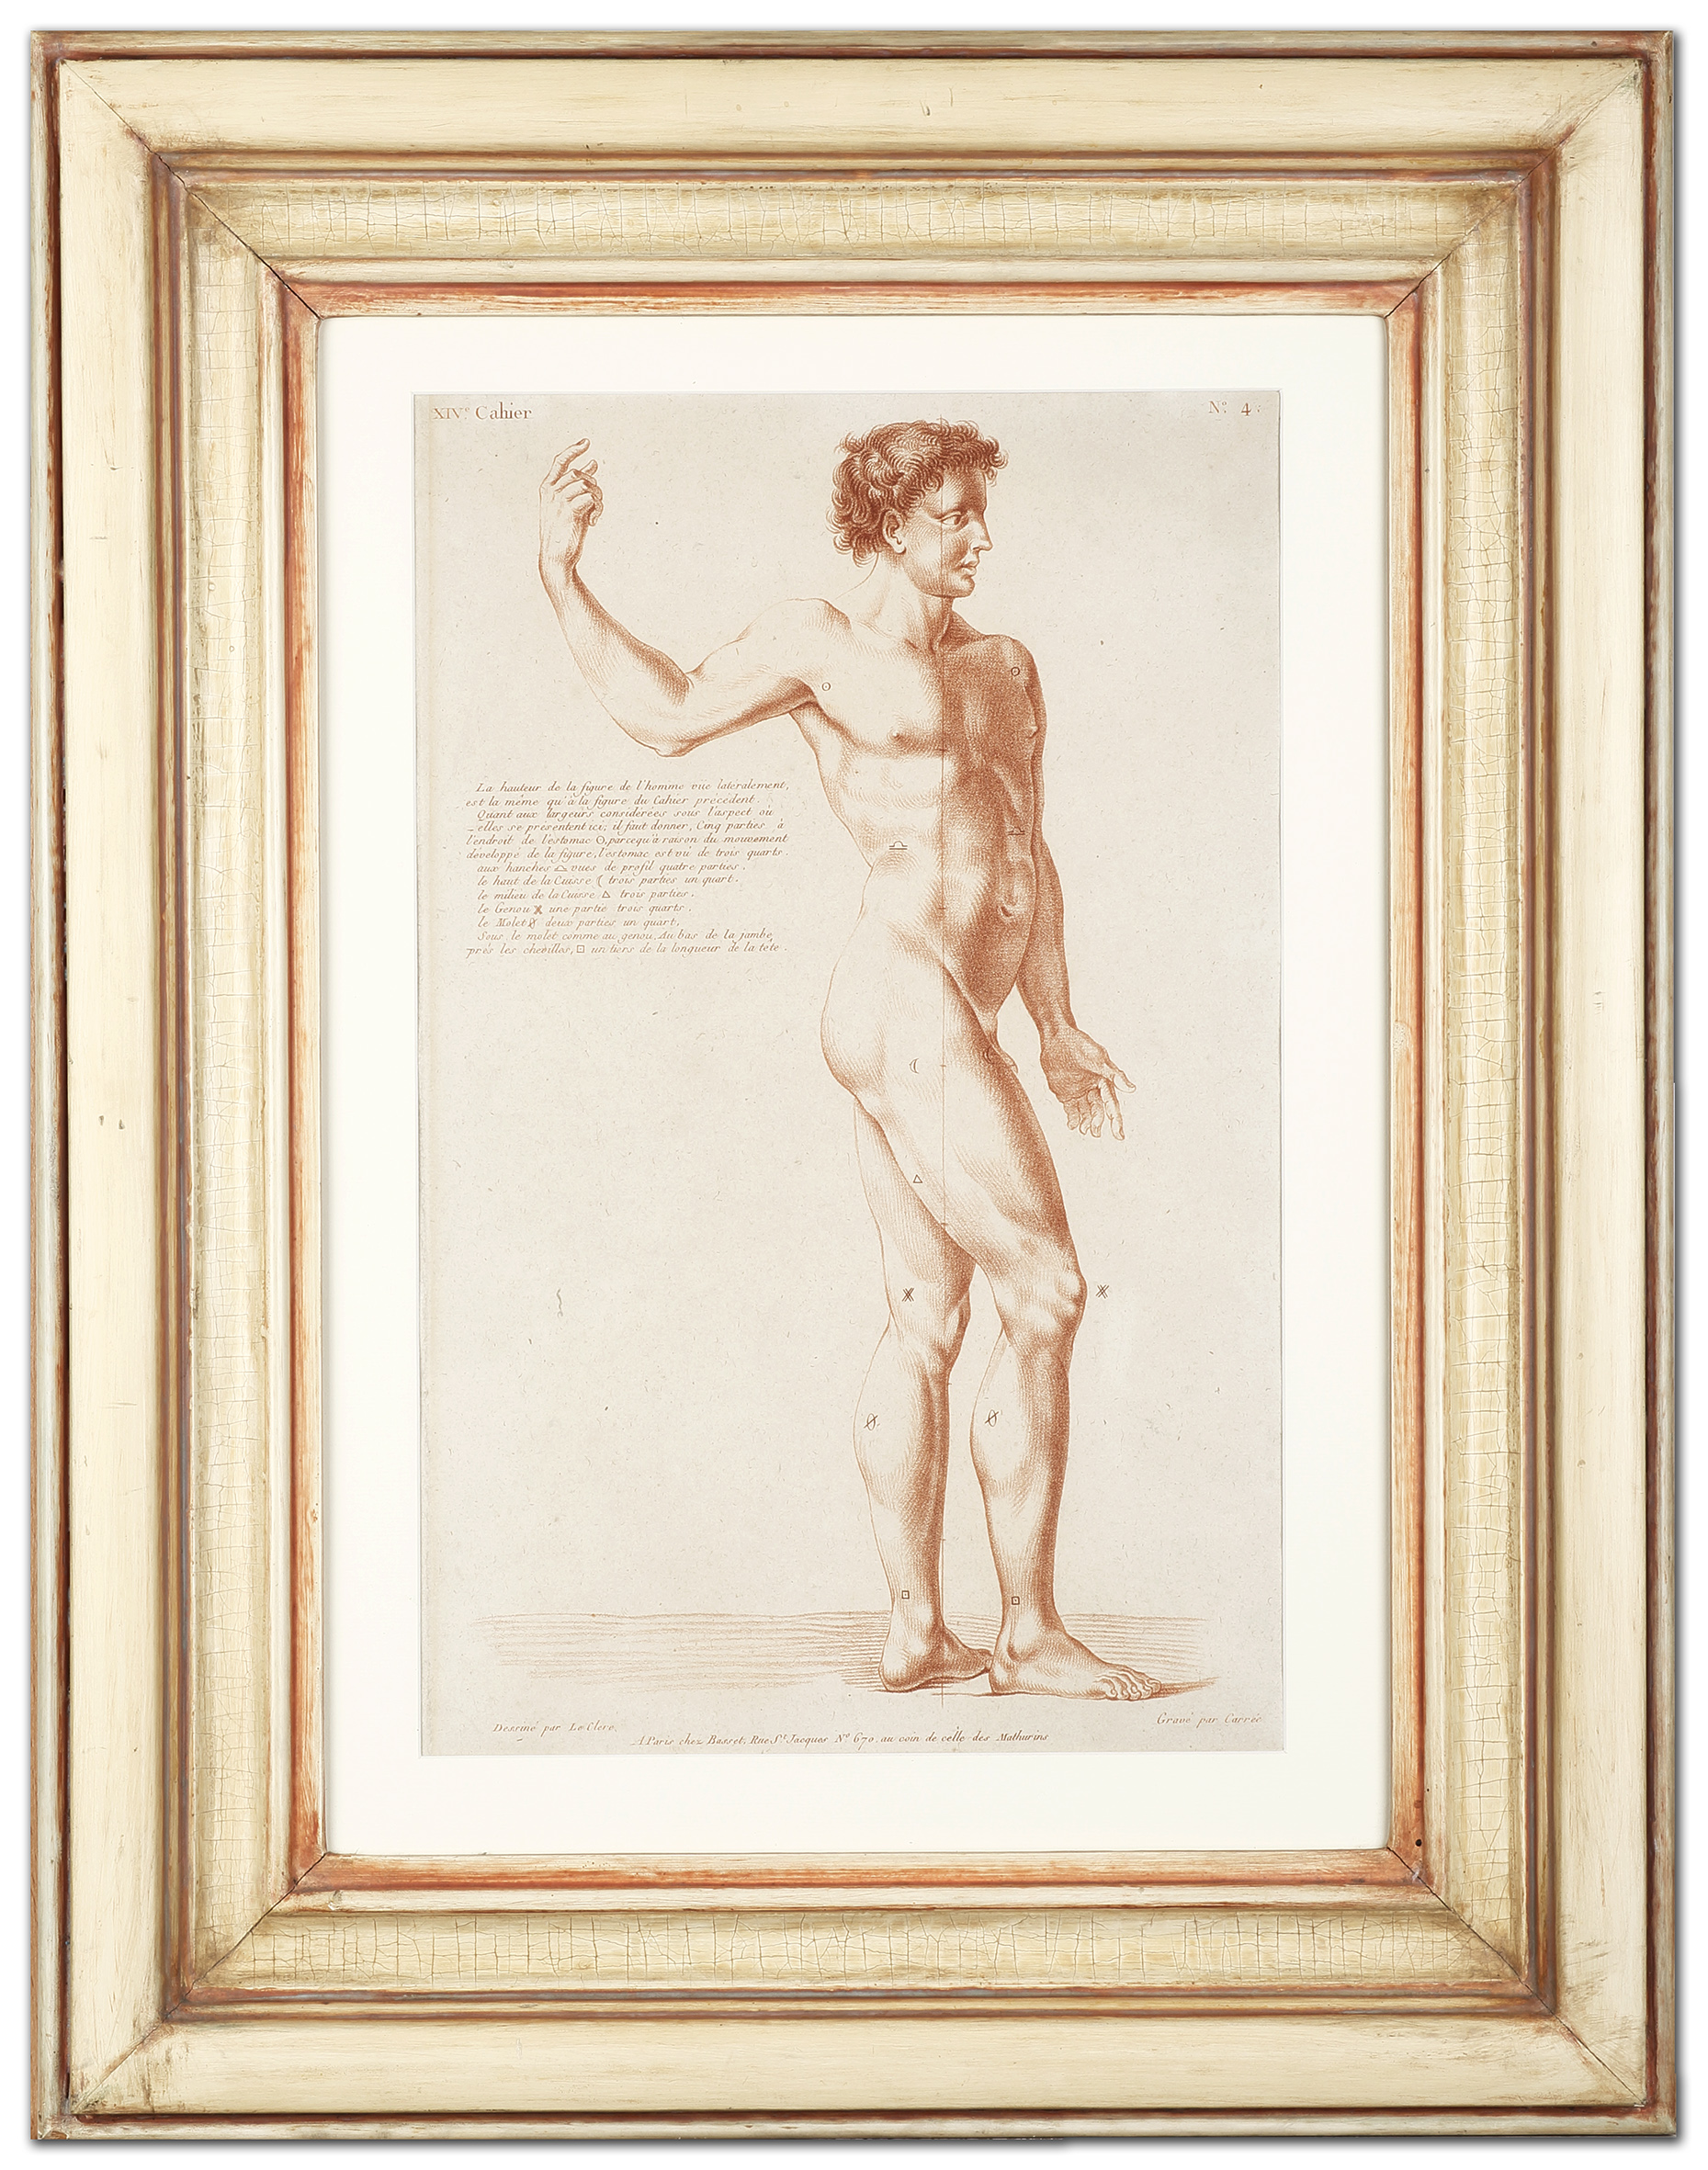 La hauteur de la figure de l'homme vue lateralmente.... - Antique Print from 1760